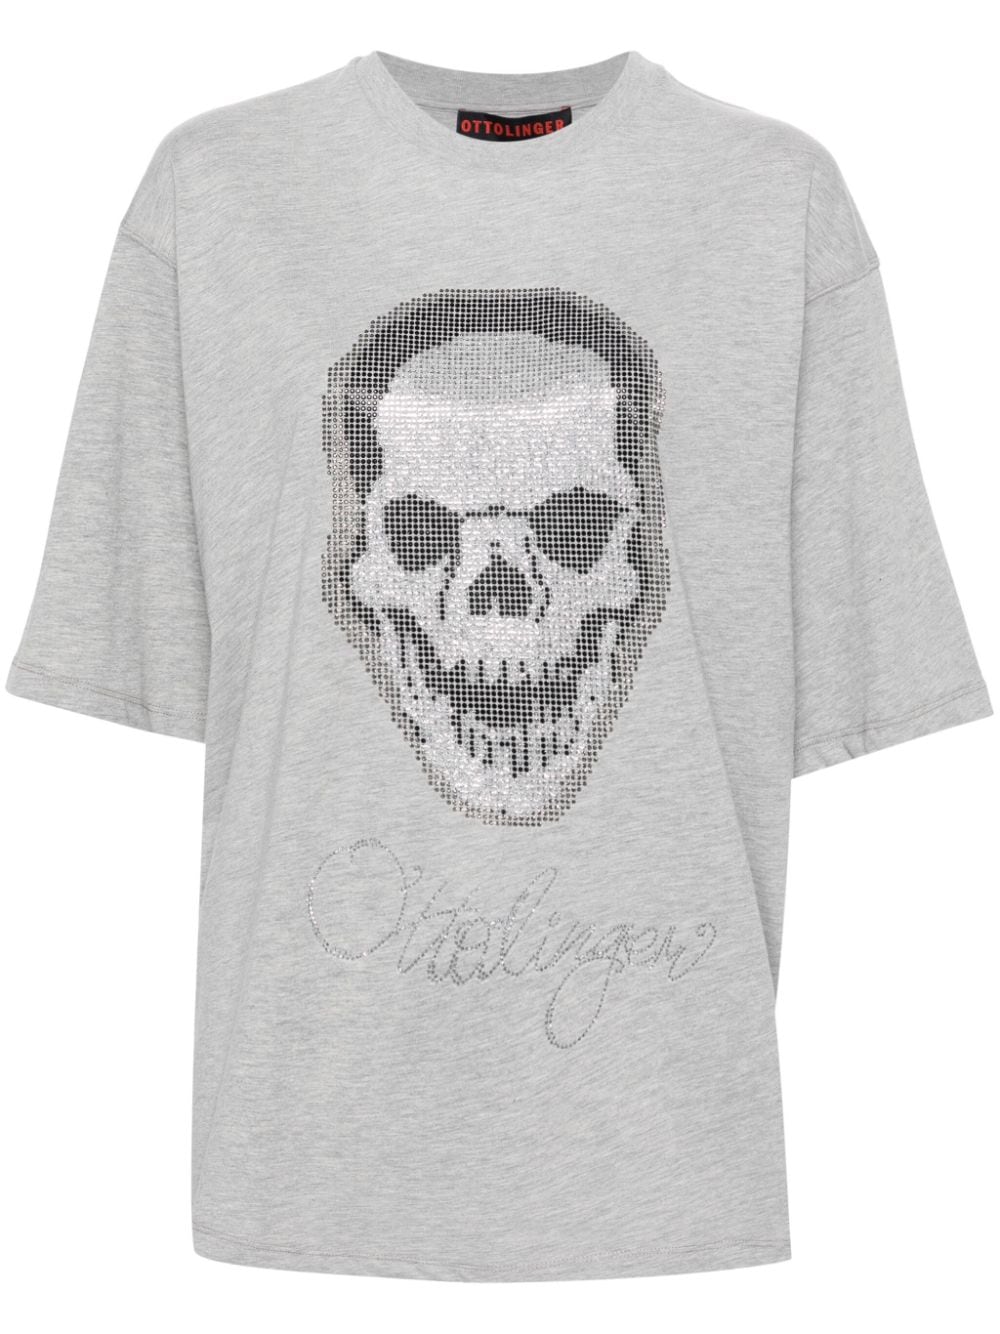 Ottolinger rhinestone-embellished T-shirt - Grey von Ottolinger